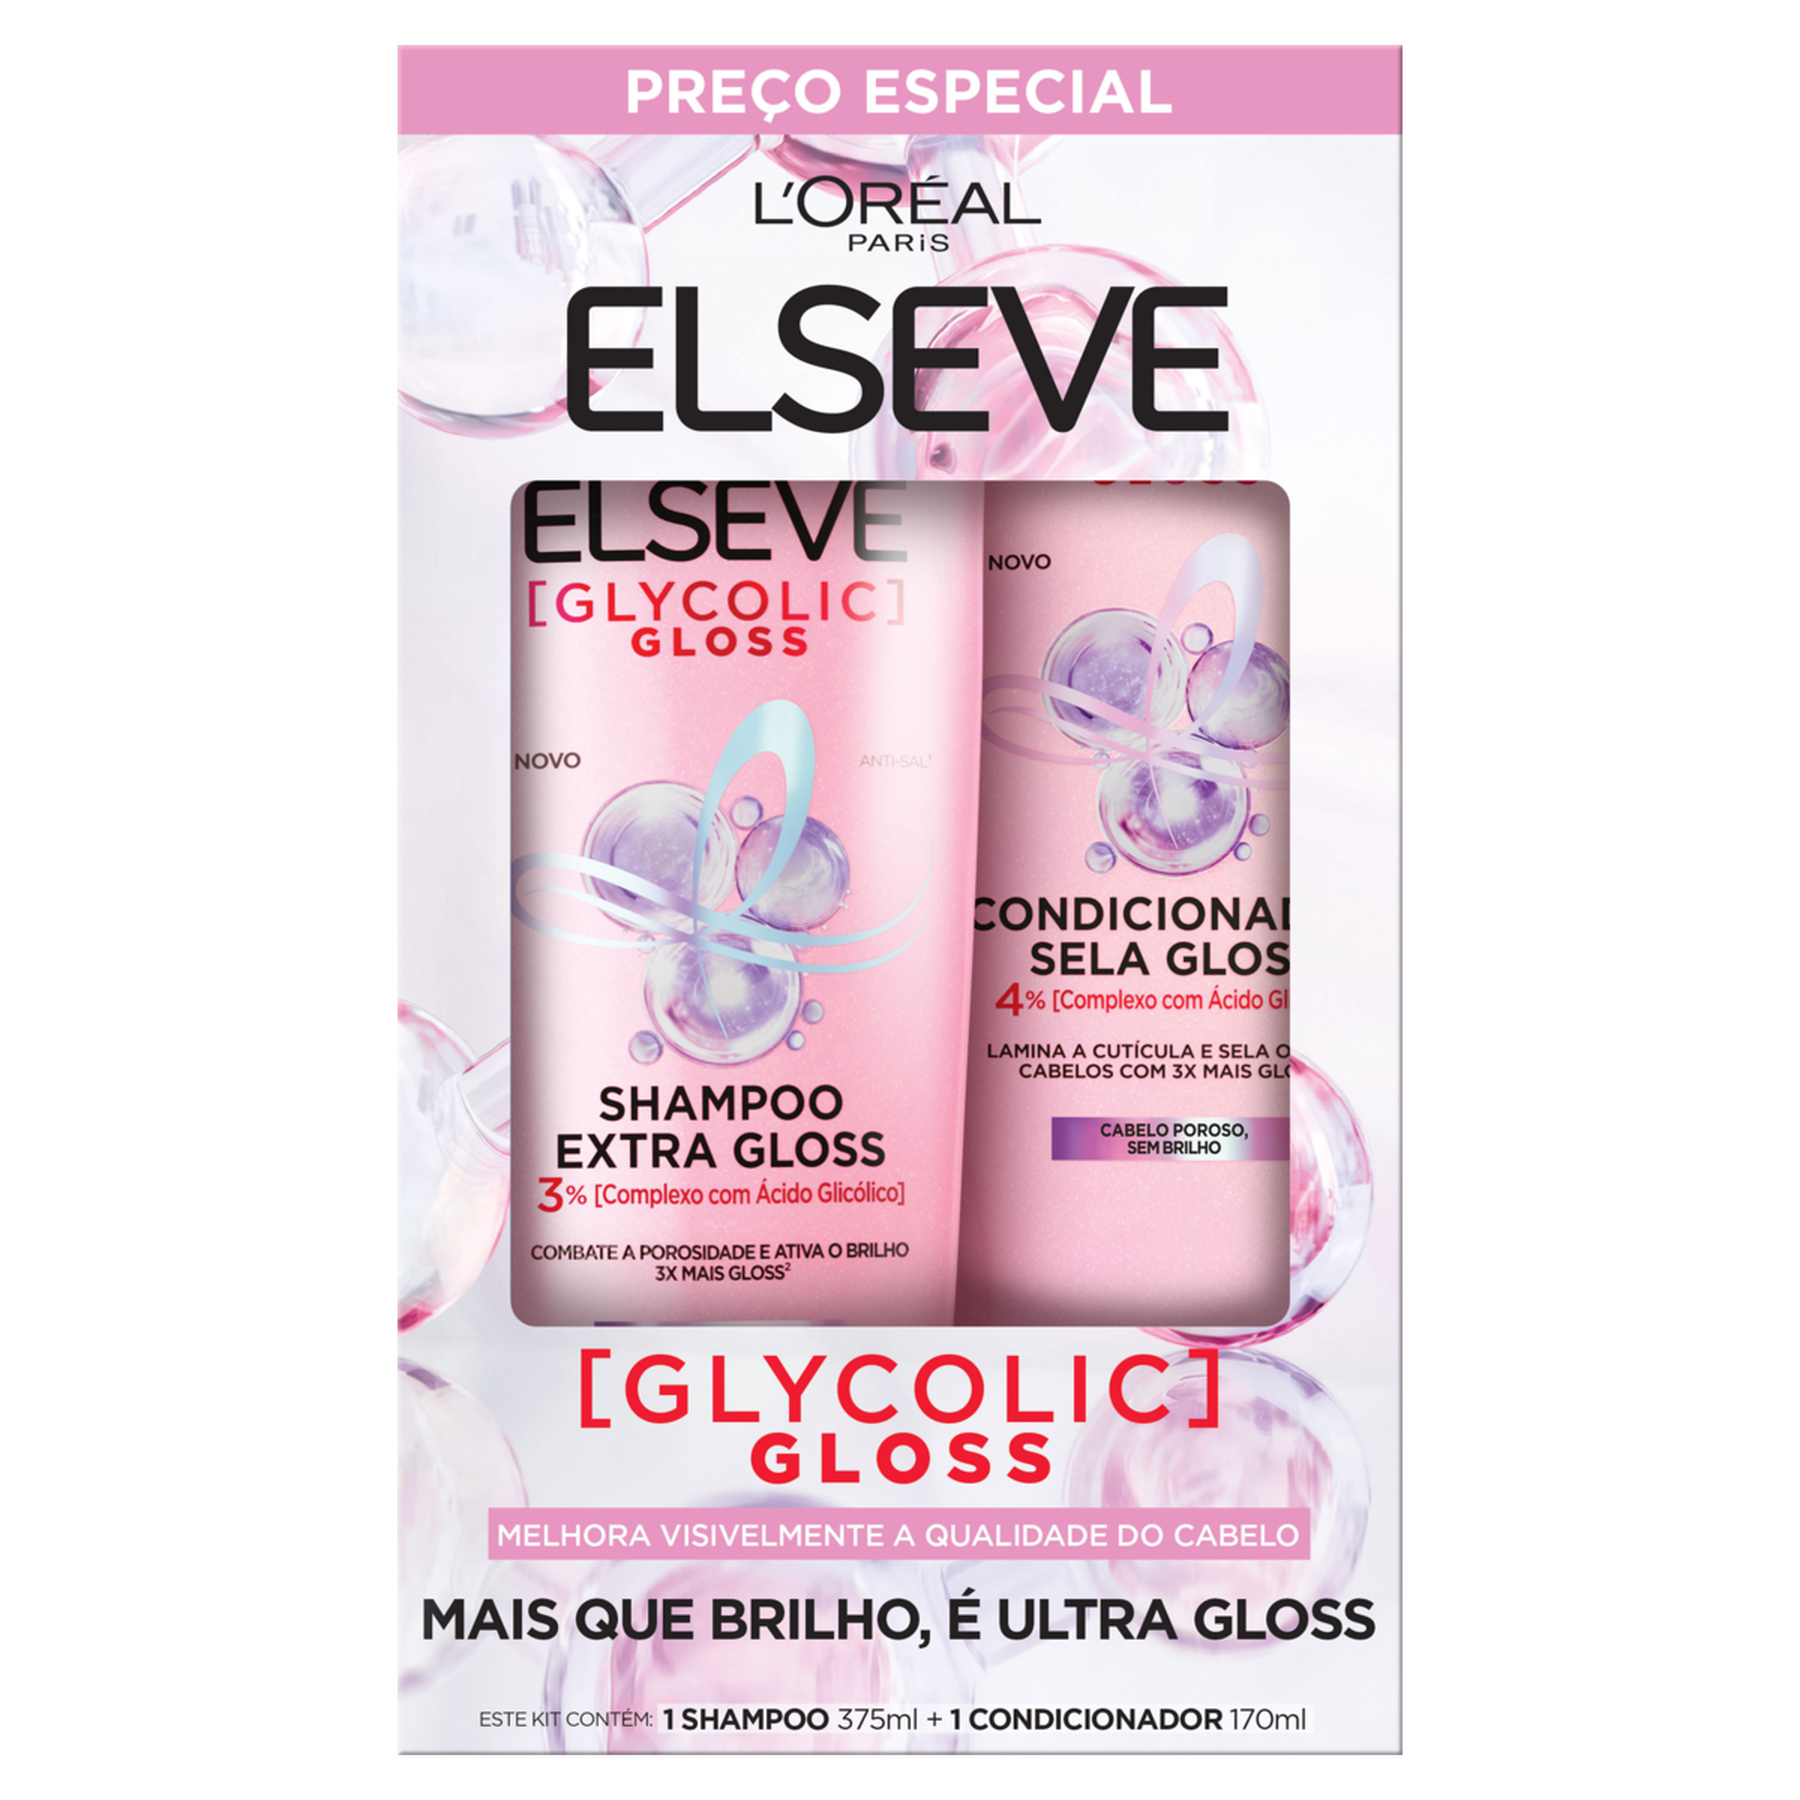 Shampoo 375ml + Condicionador 170ml Glycolic Gloss Elseve L'oréal Paris